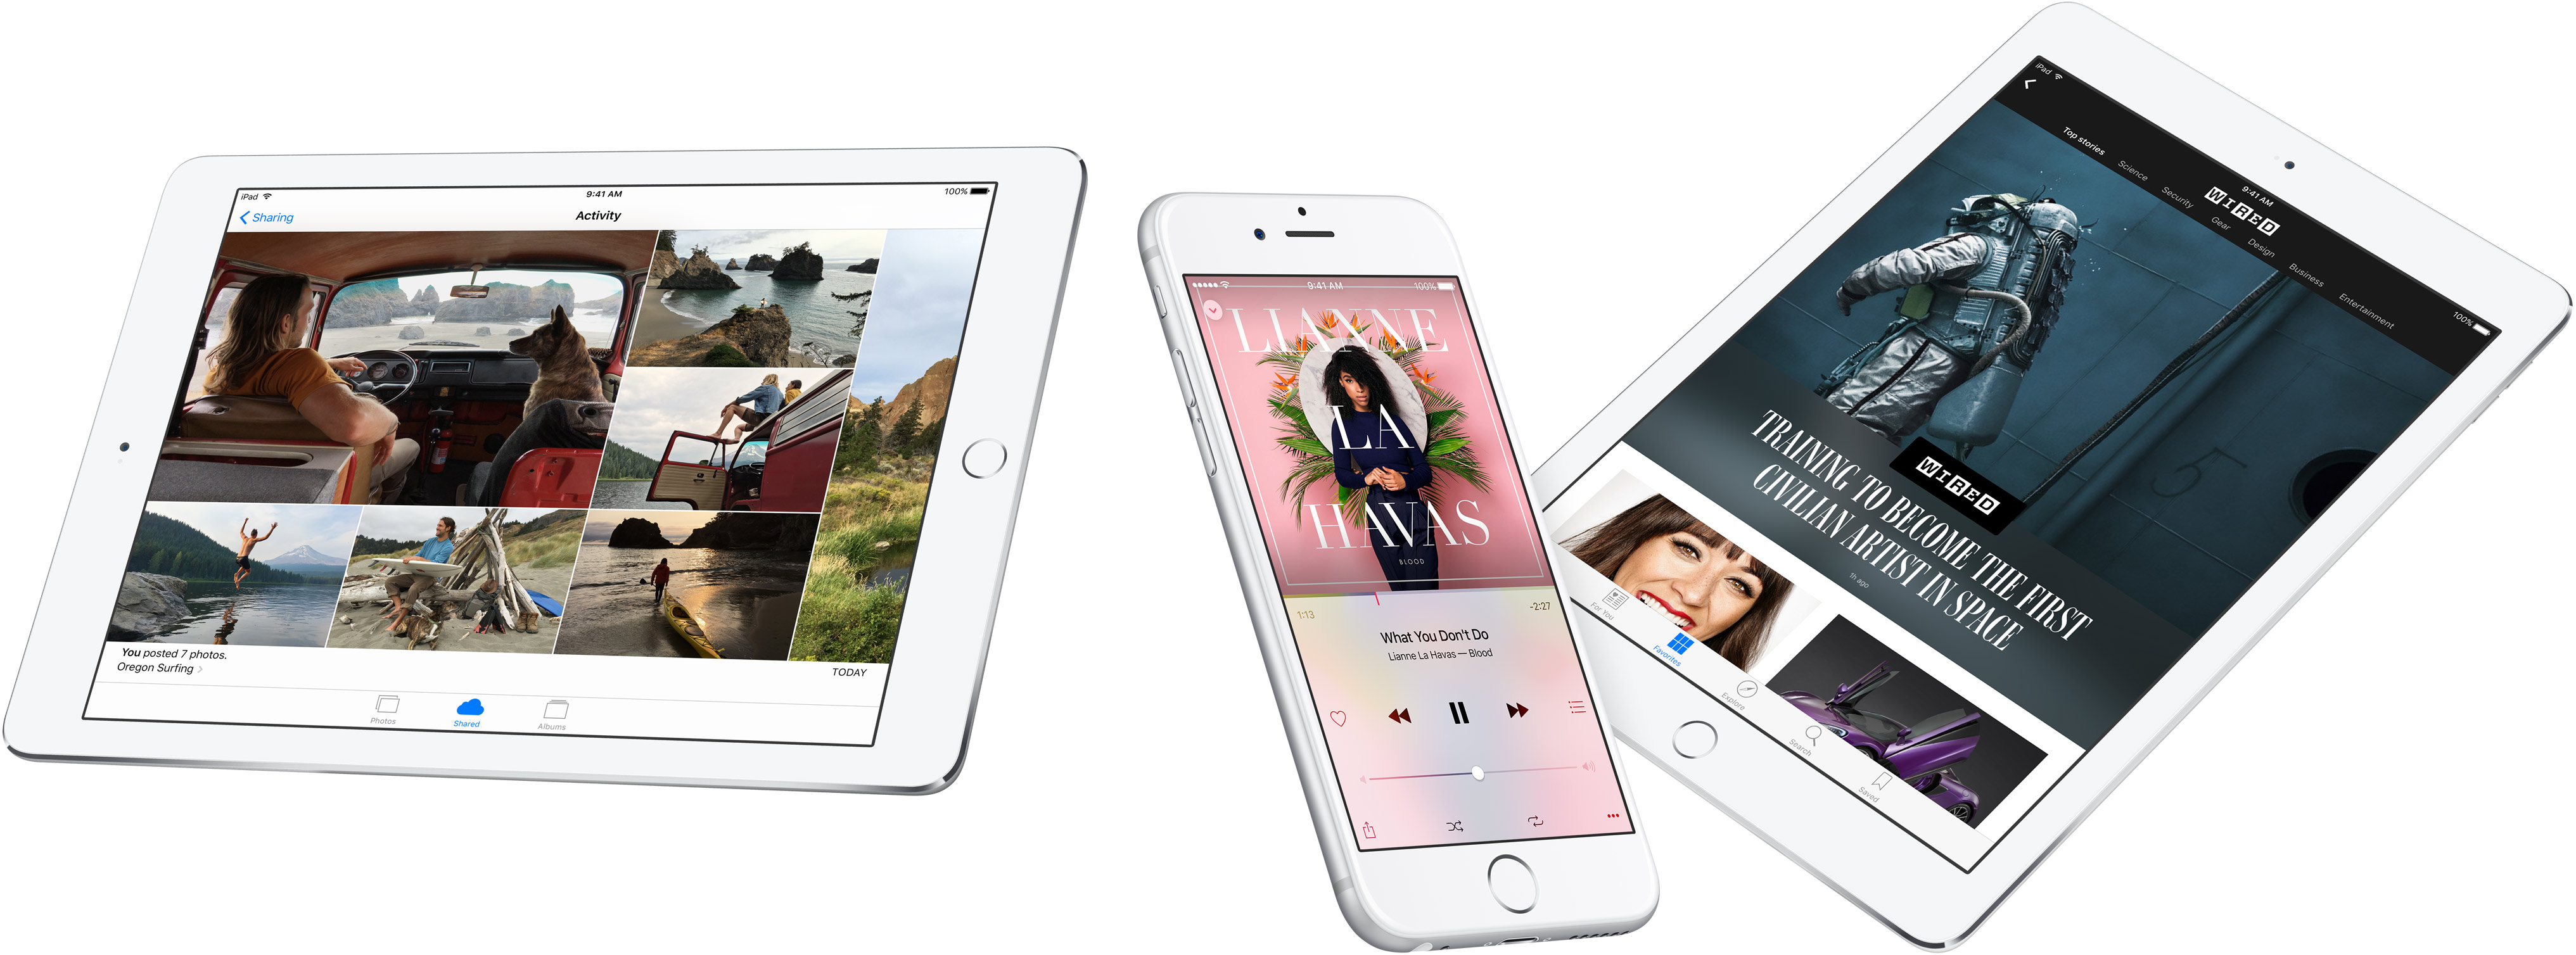 iOS 9 teaser iPhone iPad image 001